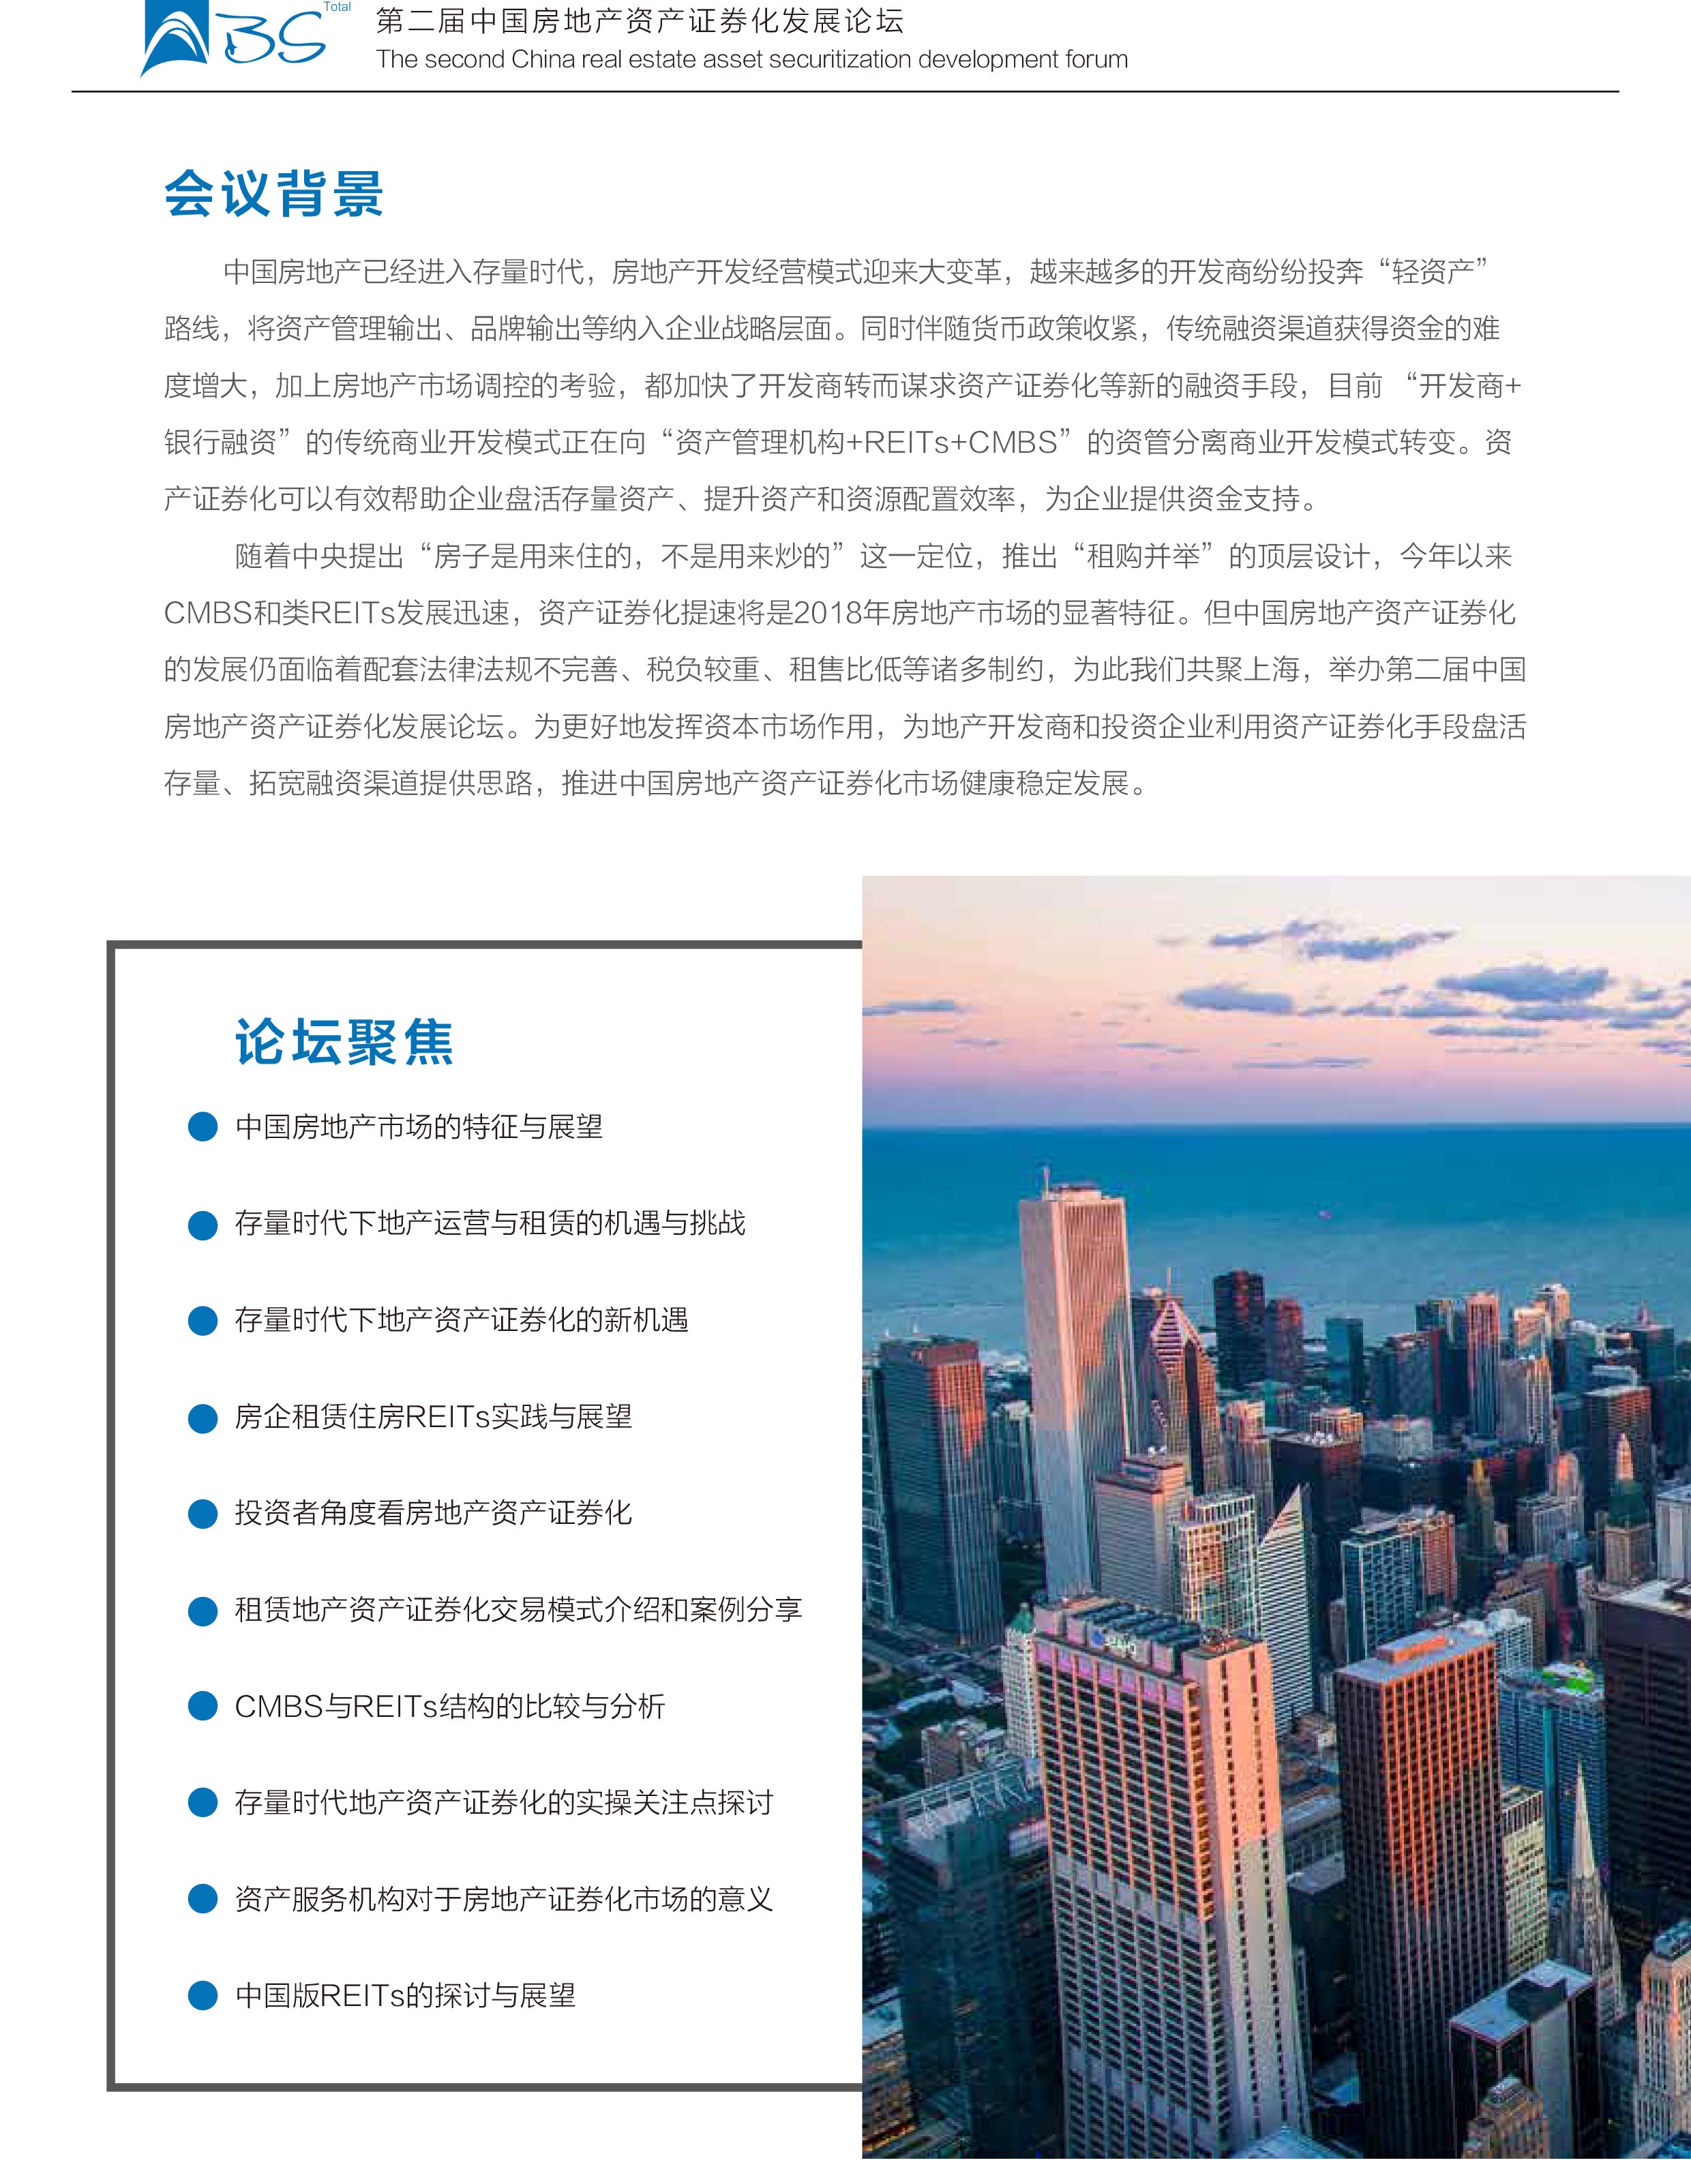 第二届中国房地产资产证券化发展论坛2018